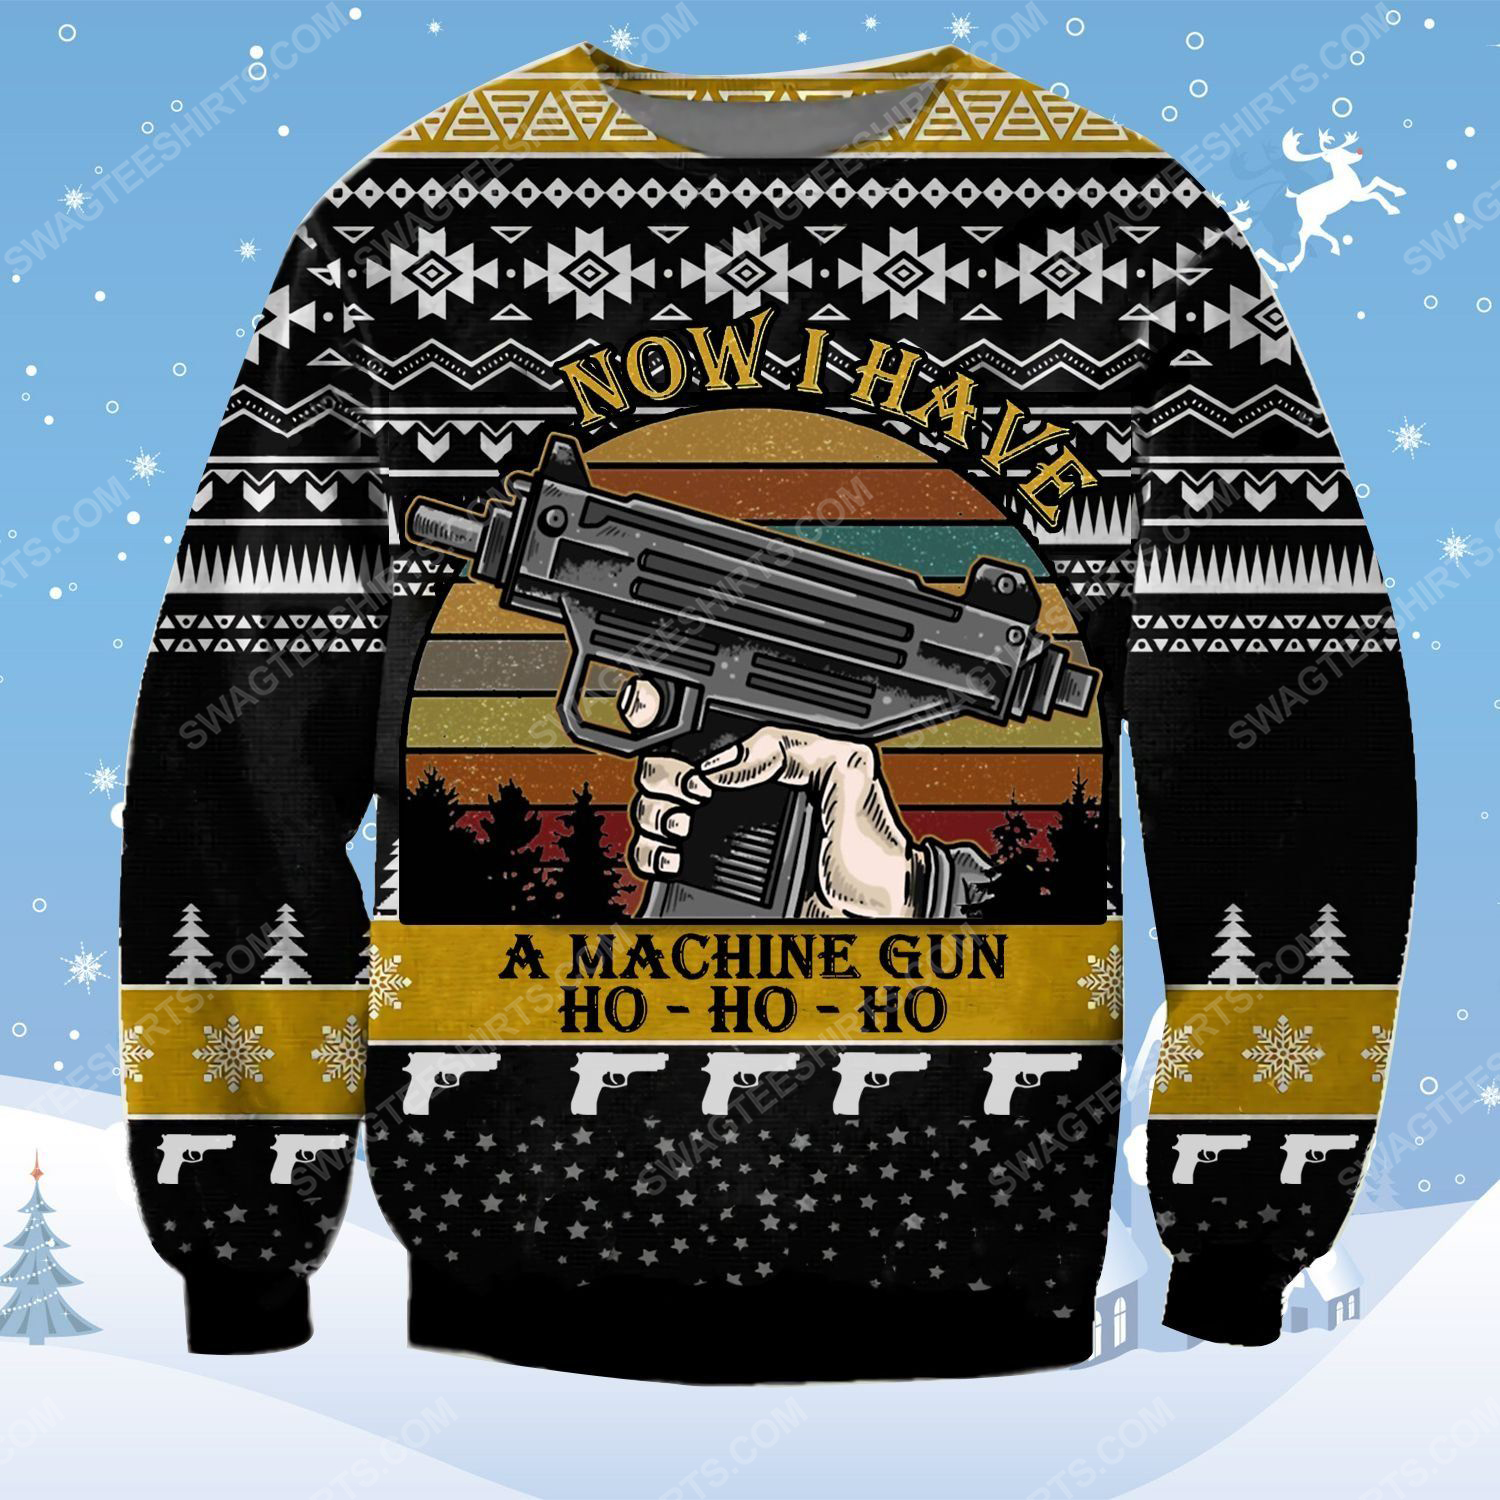 Die hard now i have a machine gun ho ho ho ugly christmas sweater - Copy